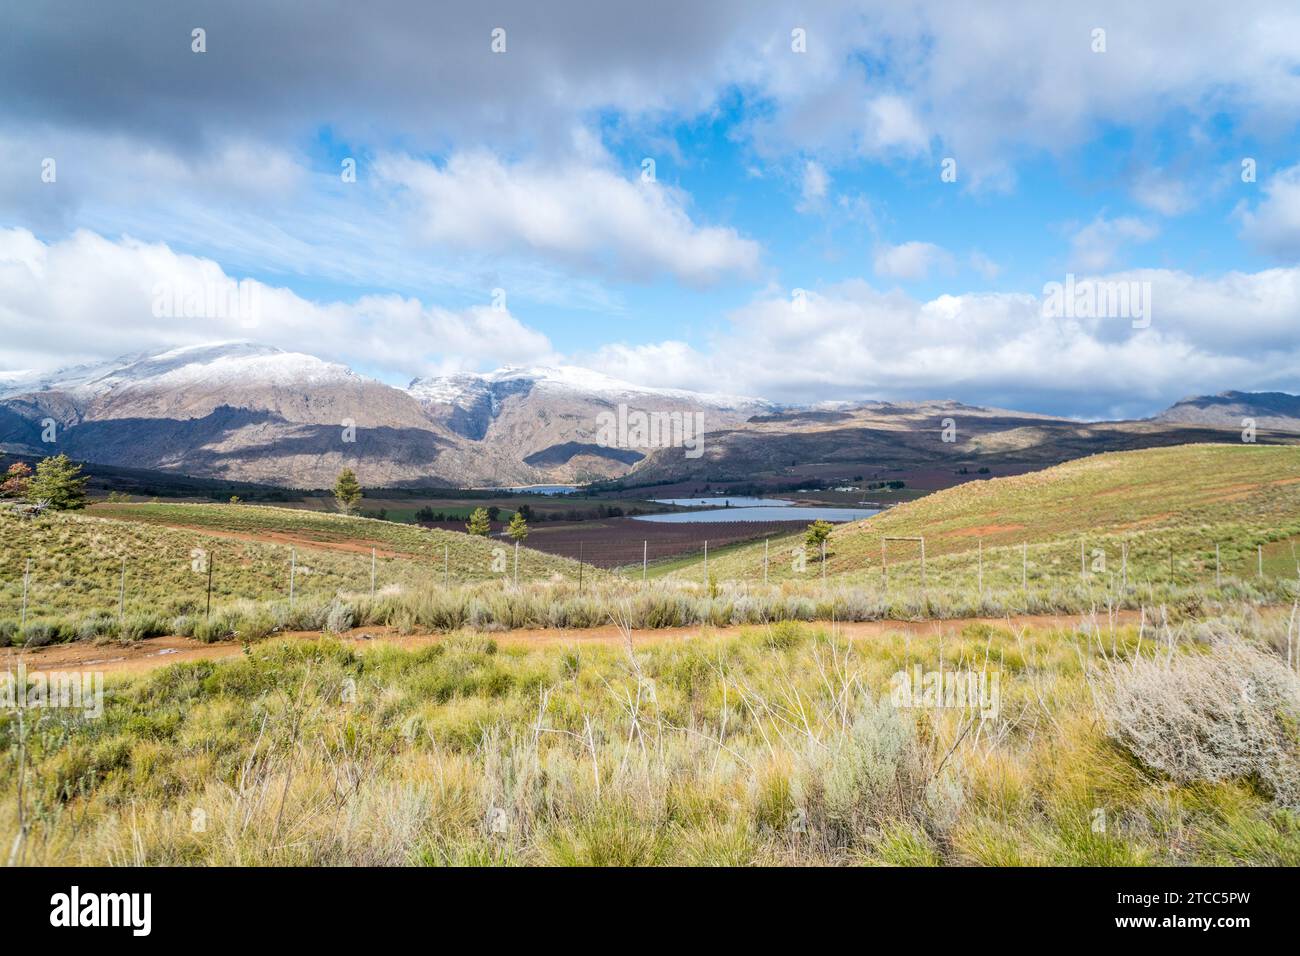 Cerere, Capo Occidentale, regione rurale e paesaggistica agricola del Sudafrica nella stagione invernale con neve sulle montagne Foto Stock